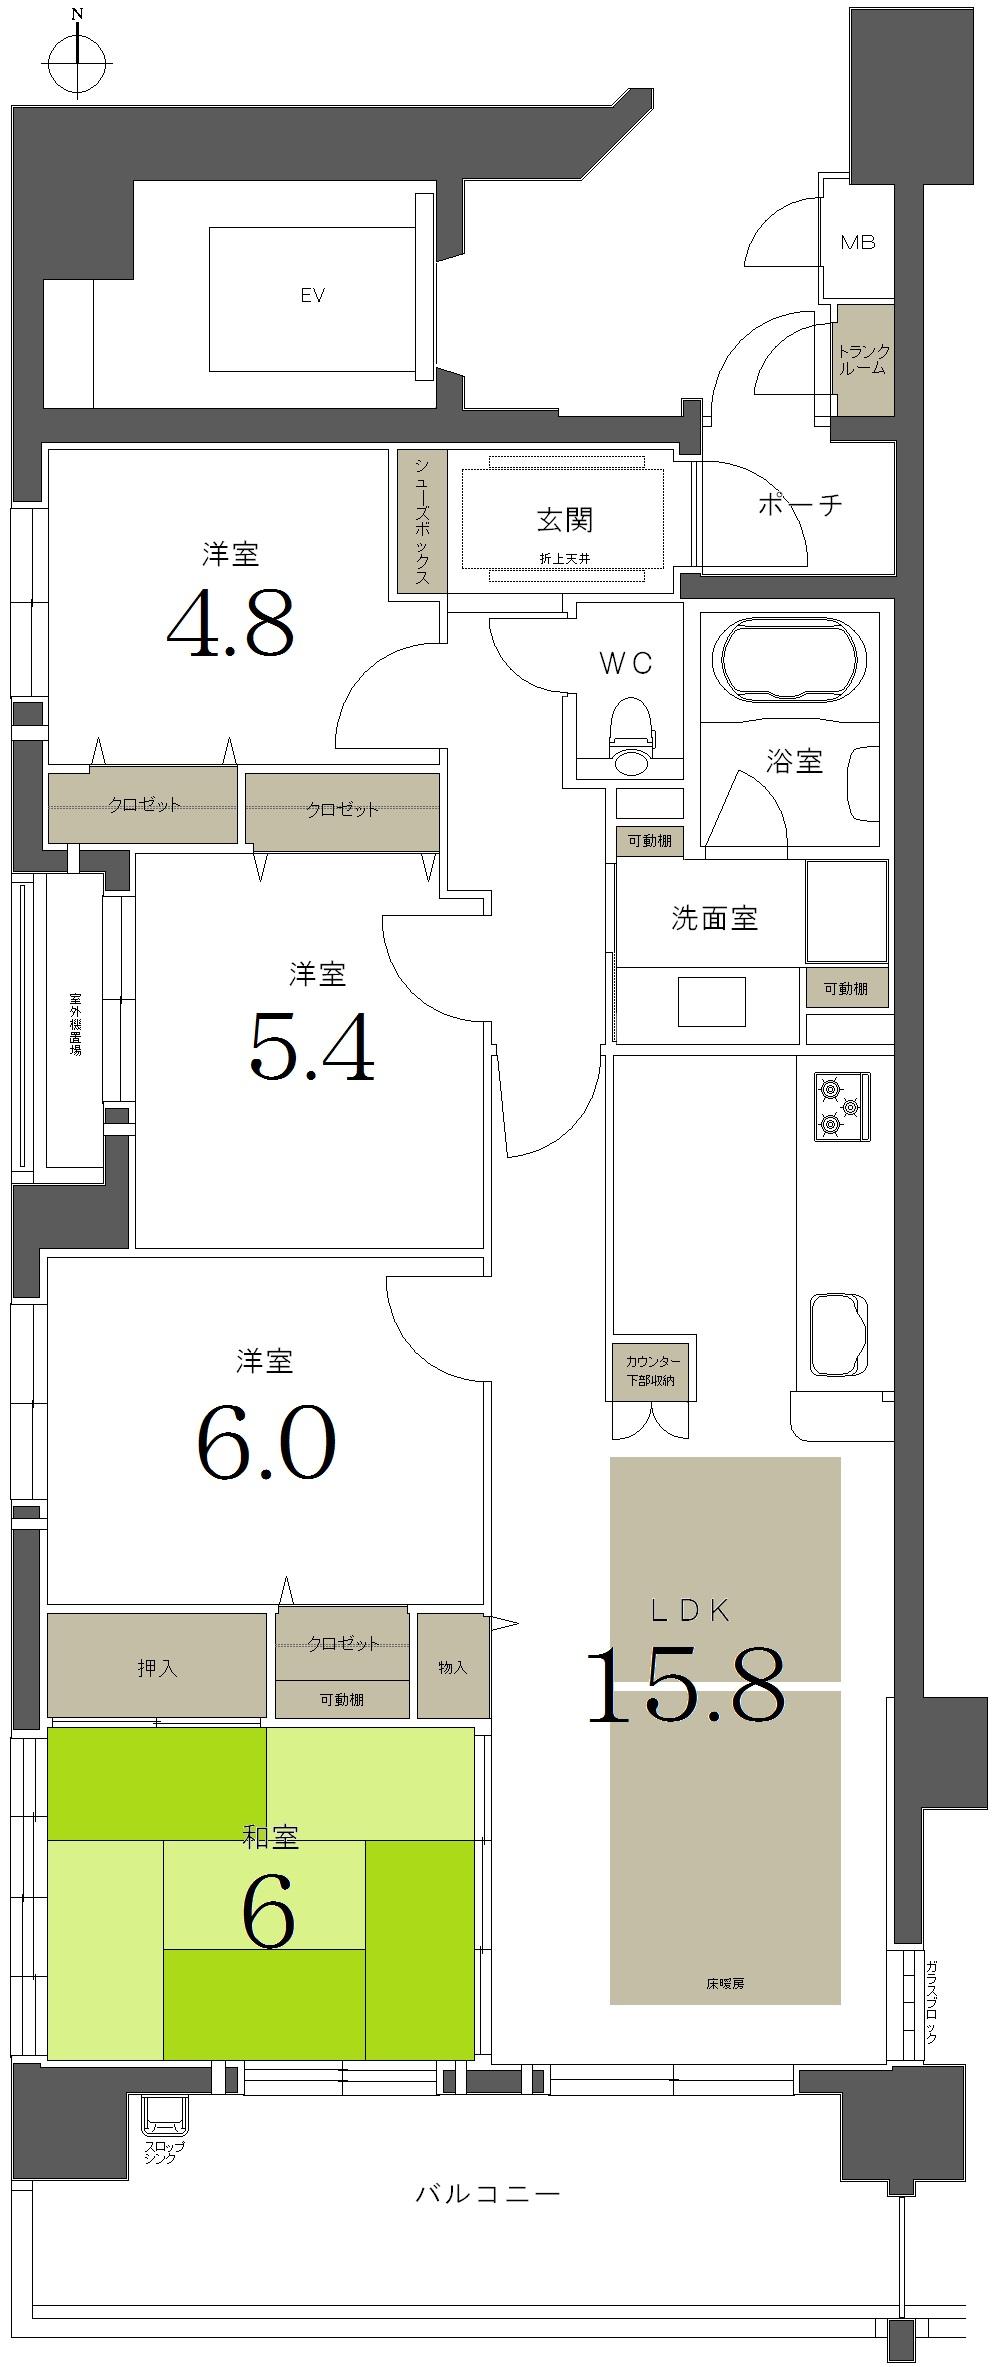 Floor plan. 4LDK, Price 50,800,000 yen, Occupied area 83.49 sq m , Balcony area 12.92 sq m floor plan